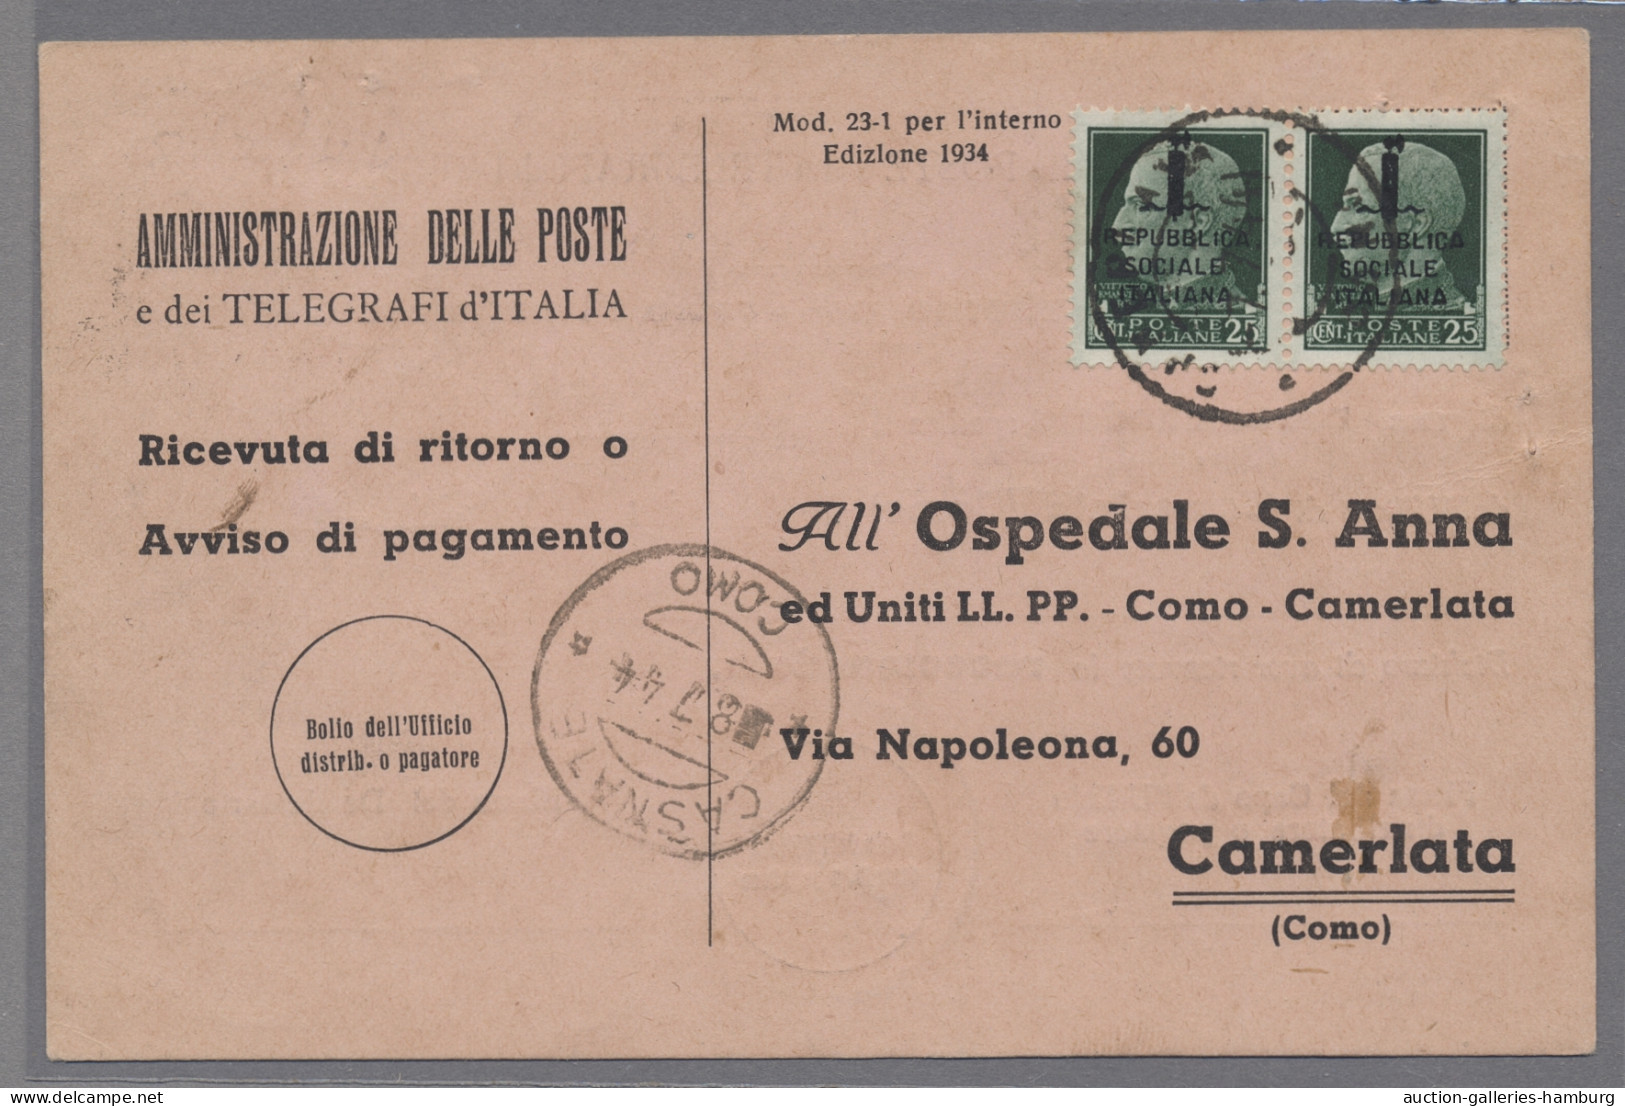 Italy: 1867-1946, Empfangsbestätigungen / Rückscheine (ricevuta di ritorno), abw